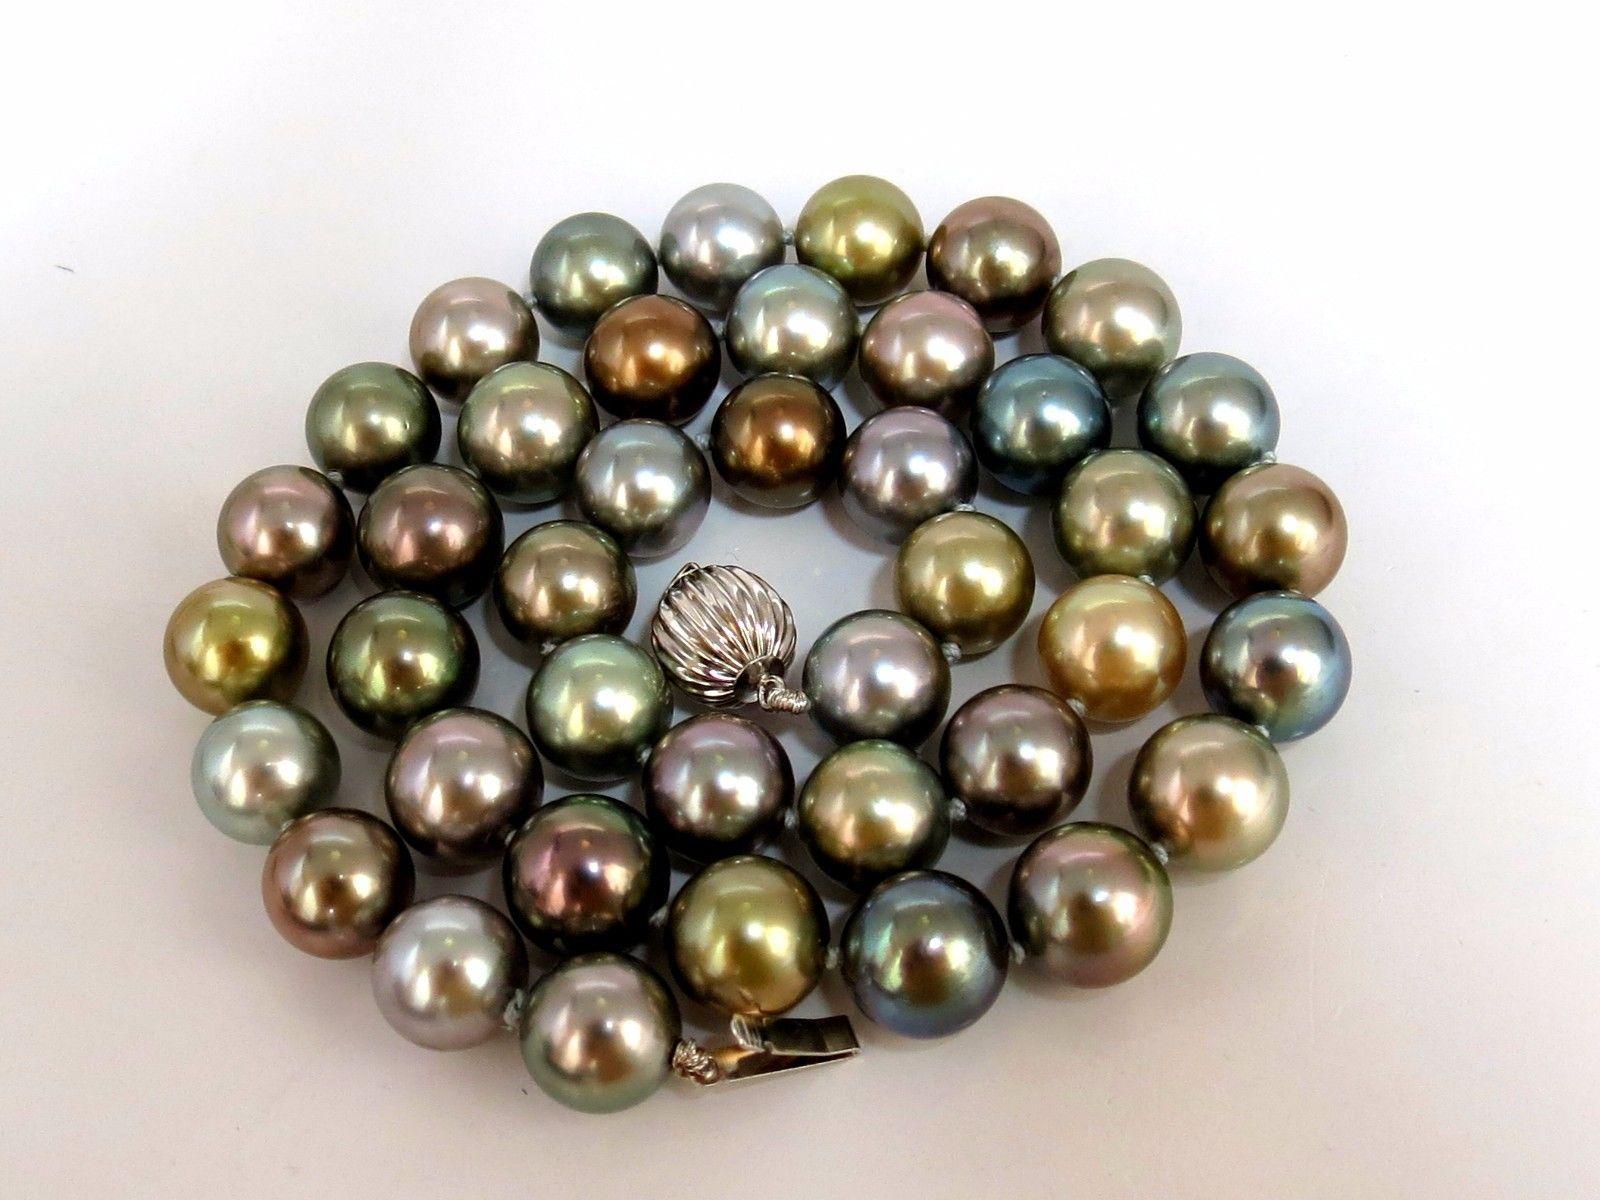 10.1-10.8MM Natürliche Tahiti Perlen Multi Farbe Halskette.

Erstklassiger Glanz & hervorragende Sättigung

41 Perlen

Aufgereiht mit Kugelschließe.

14 Karat Weißgold.

18 Zoll

Gesamtbetrag 64 Gramm

Schätzung wird für begleiten: $12,000